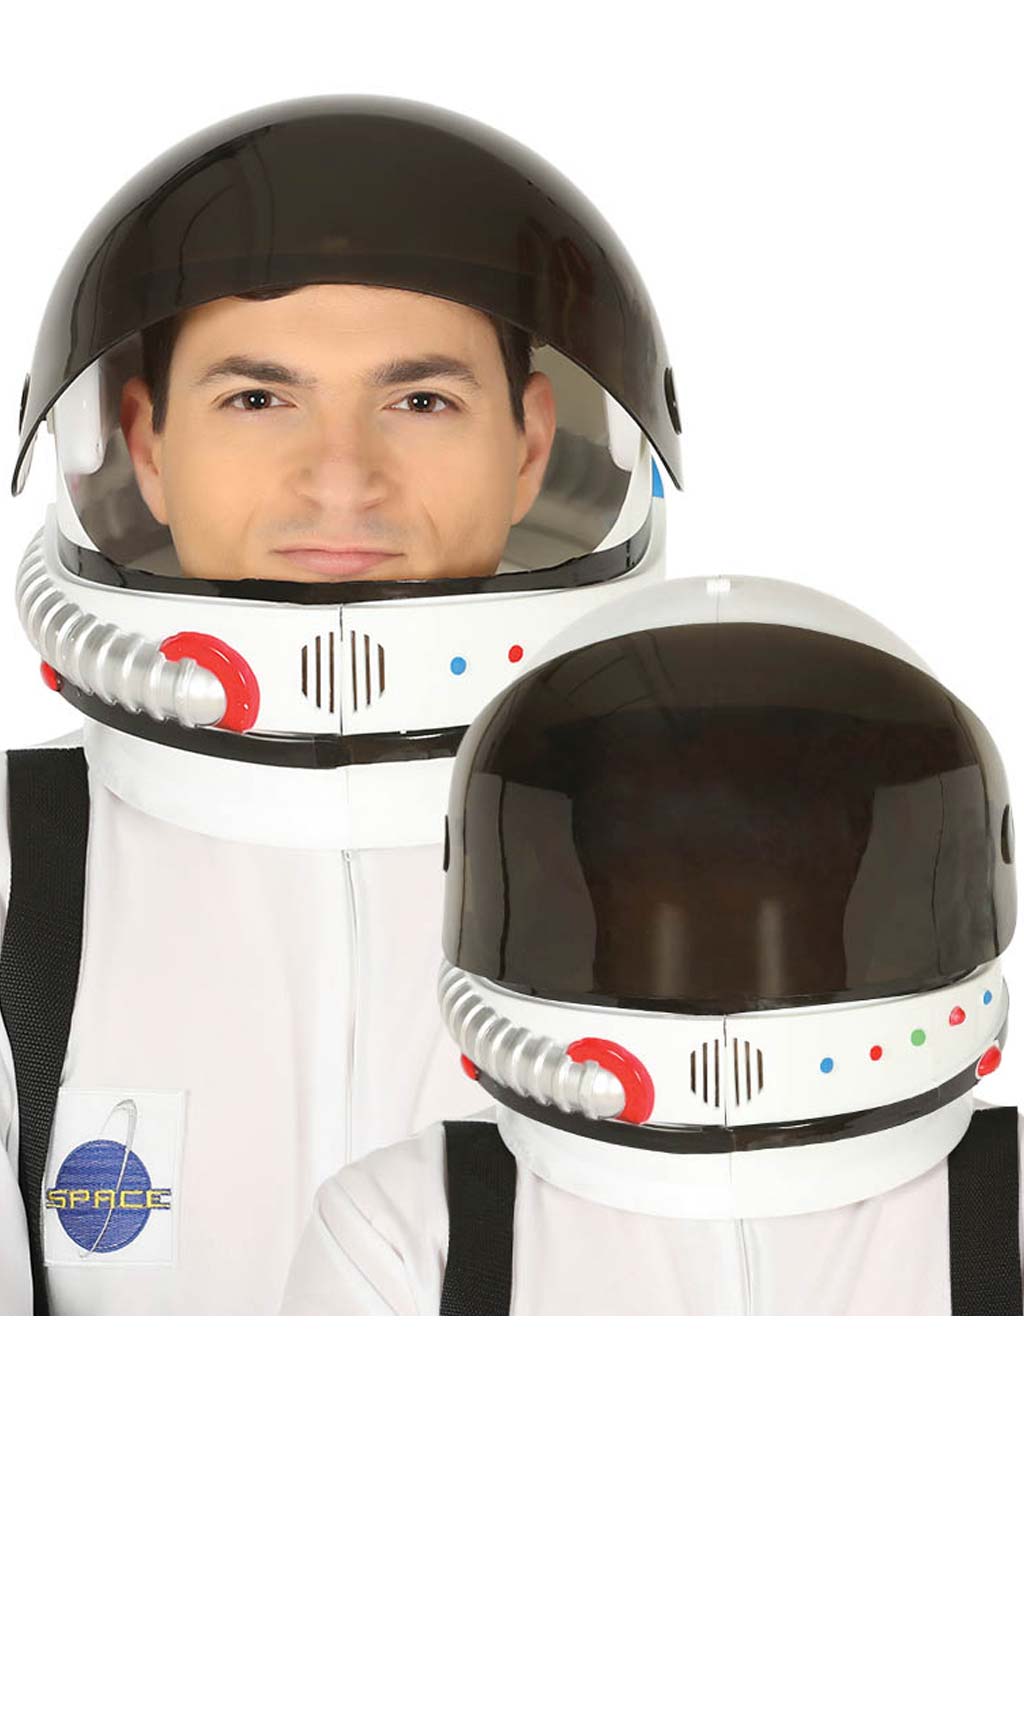 Casco de Astronauta Deluxe